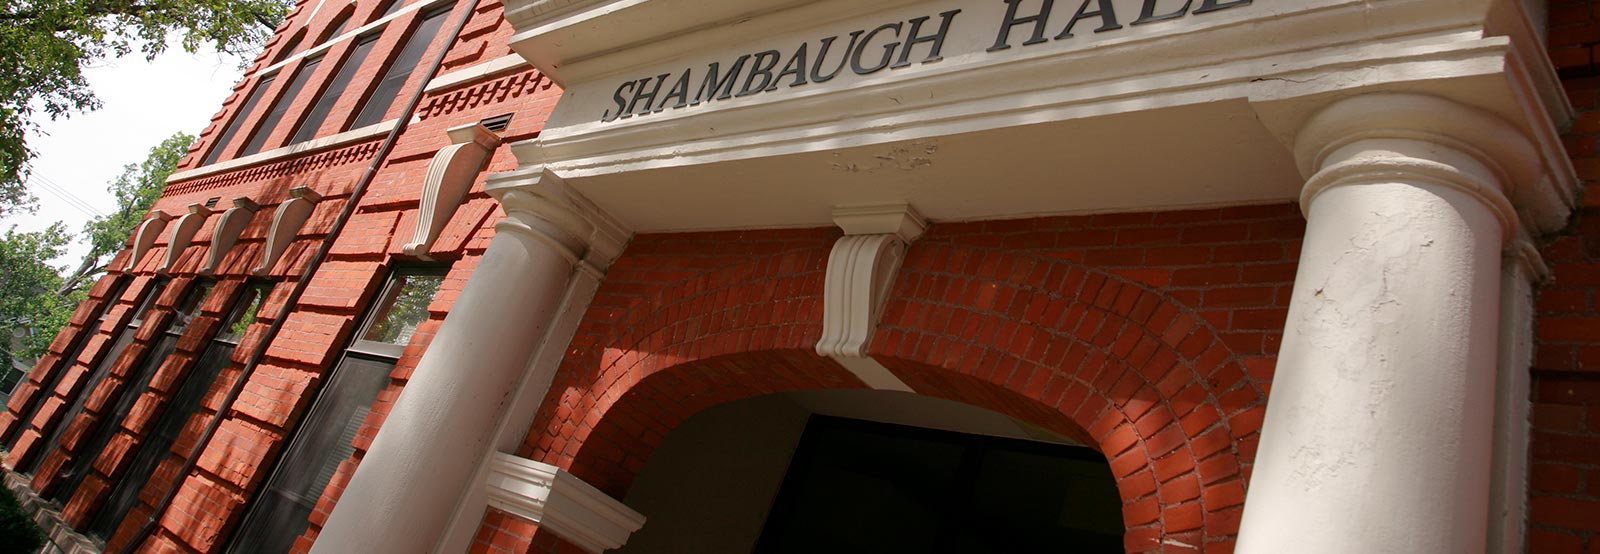 Shambaugh Hall